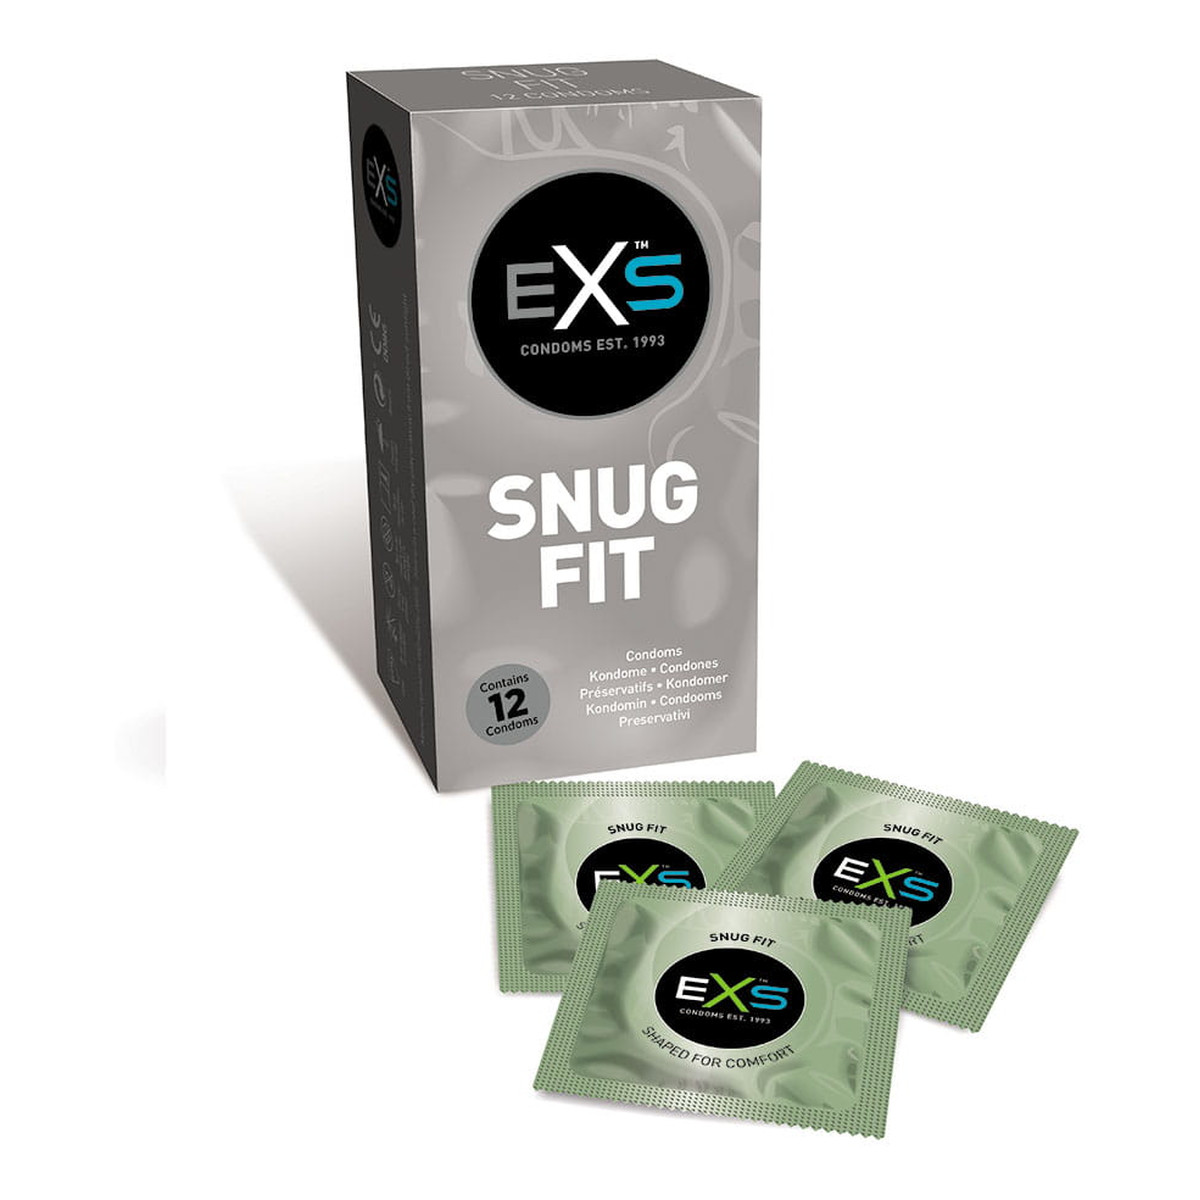 EXS Snug fit condoms dopasowane prezerwatywy 12szt.